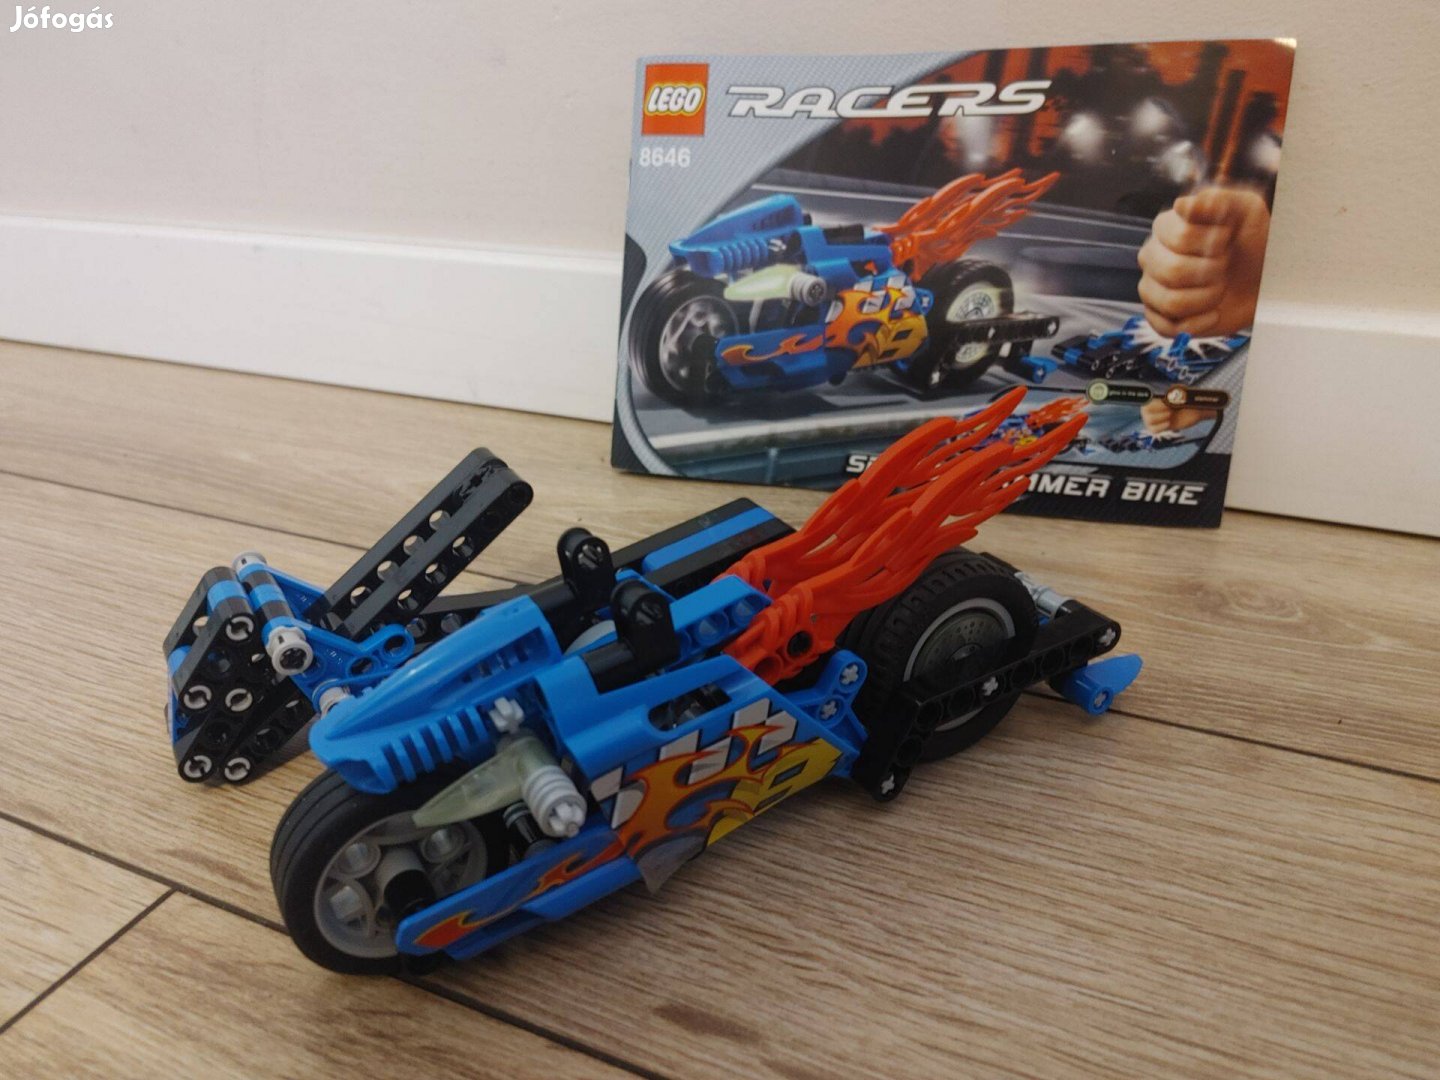 Lego, Racers - Speed Slammer Bike (8646)